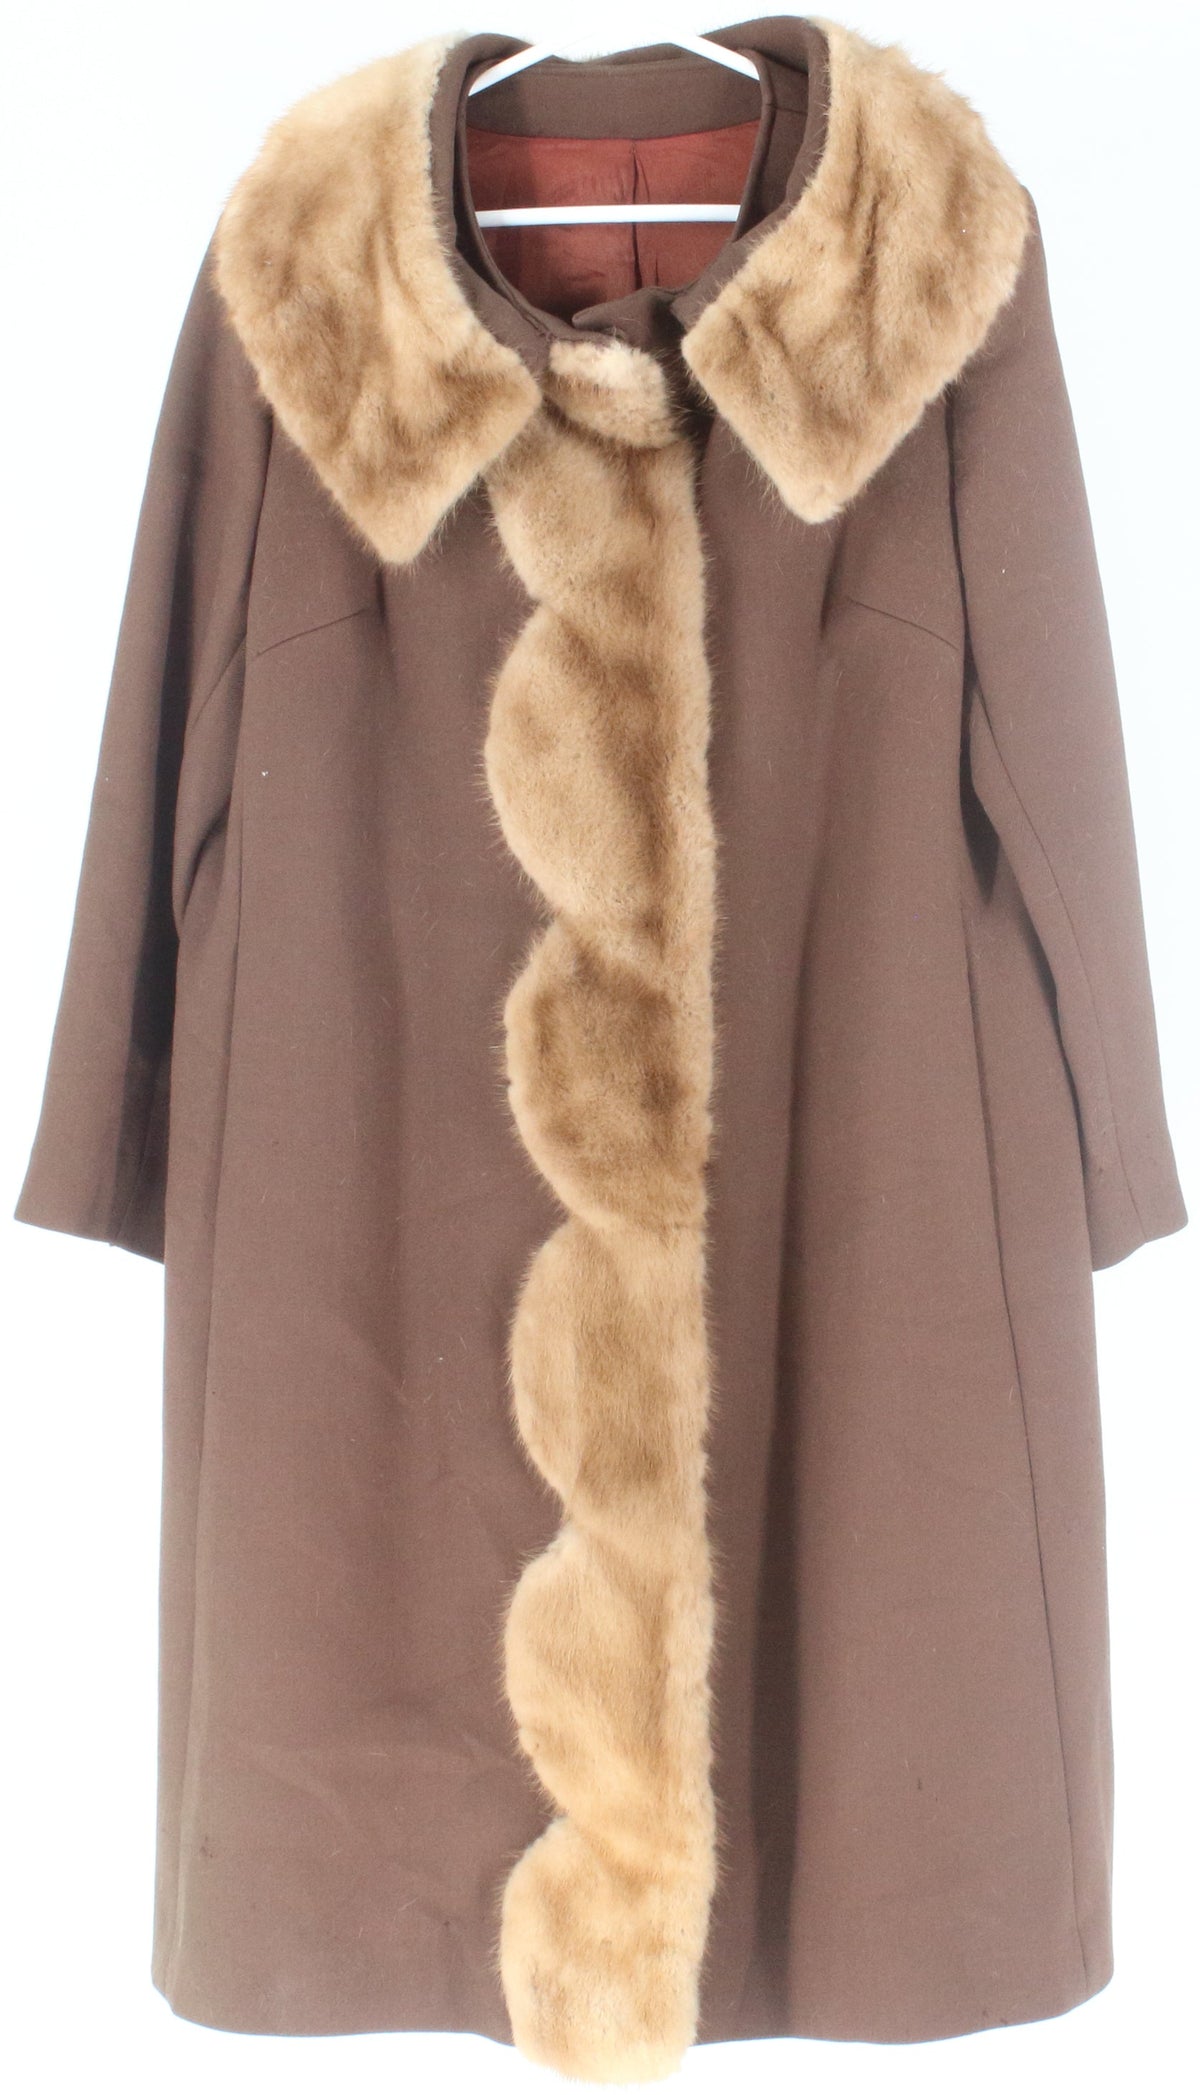 Crestmoor Brown Women's Coat With Faux Fur Collar